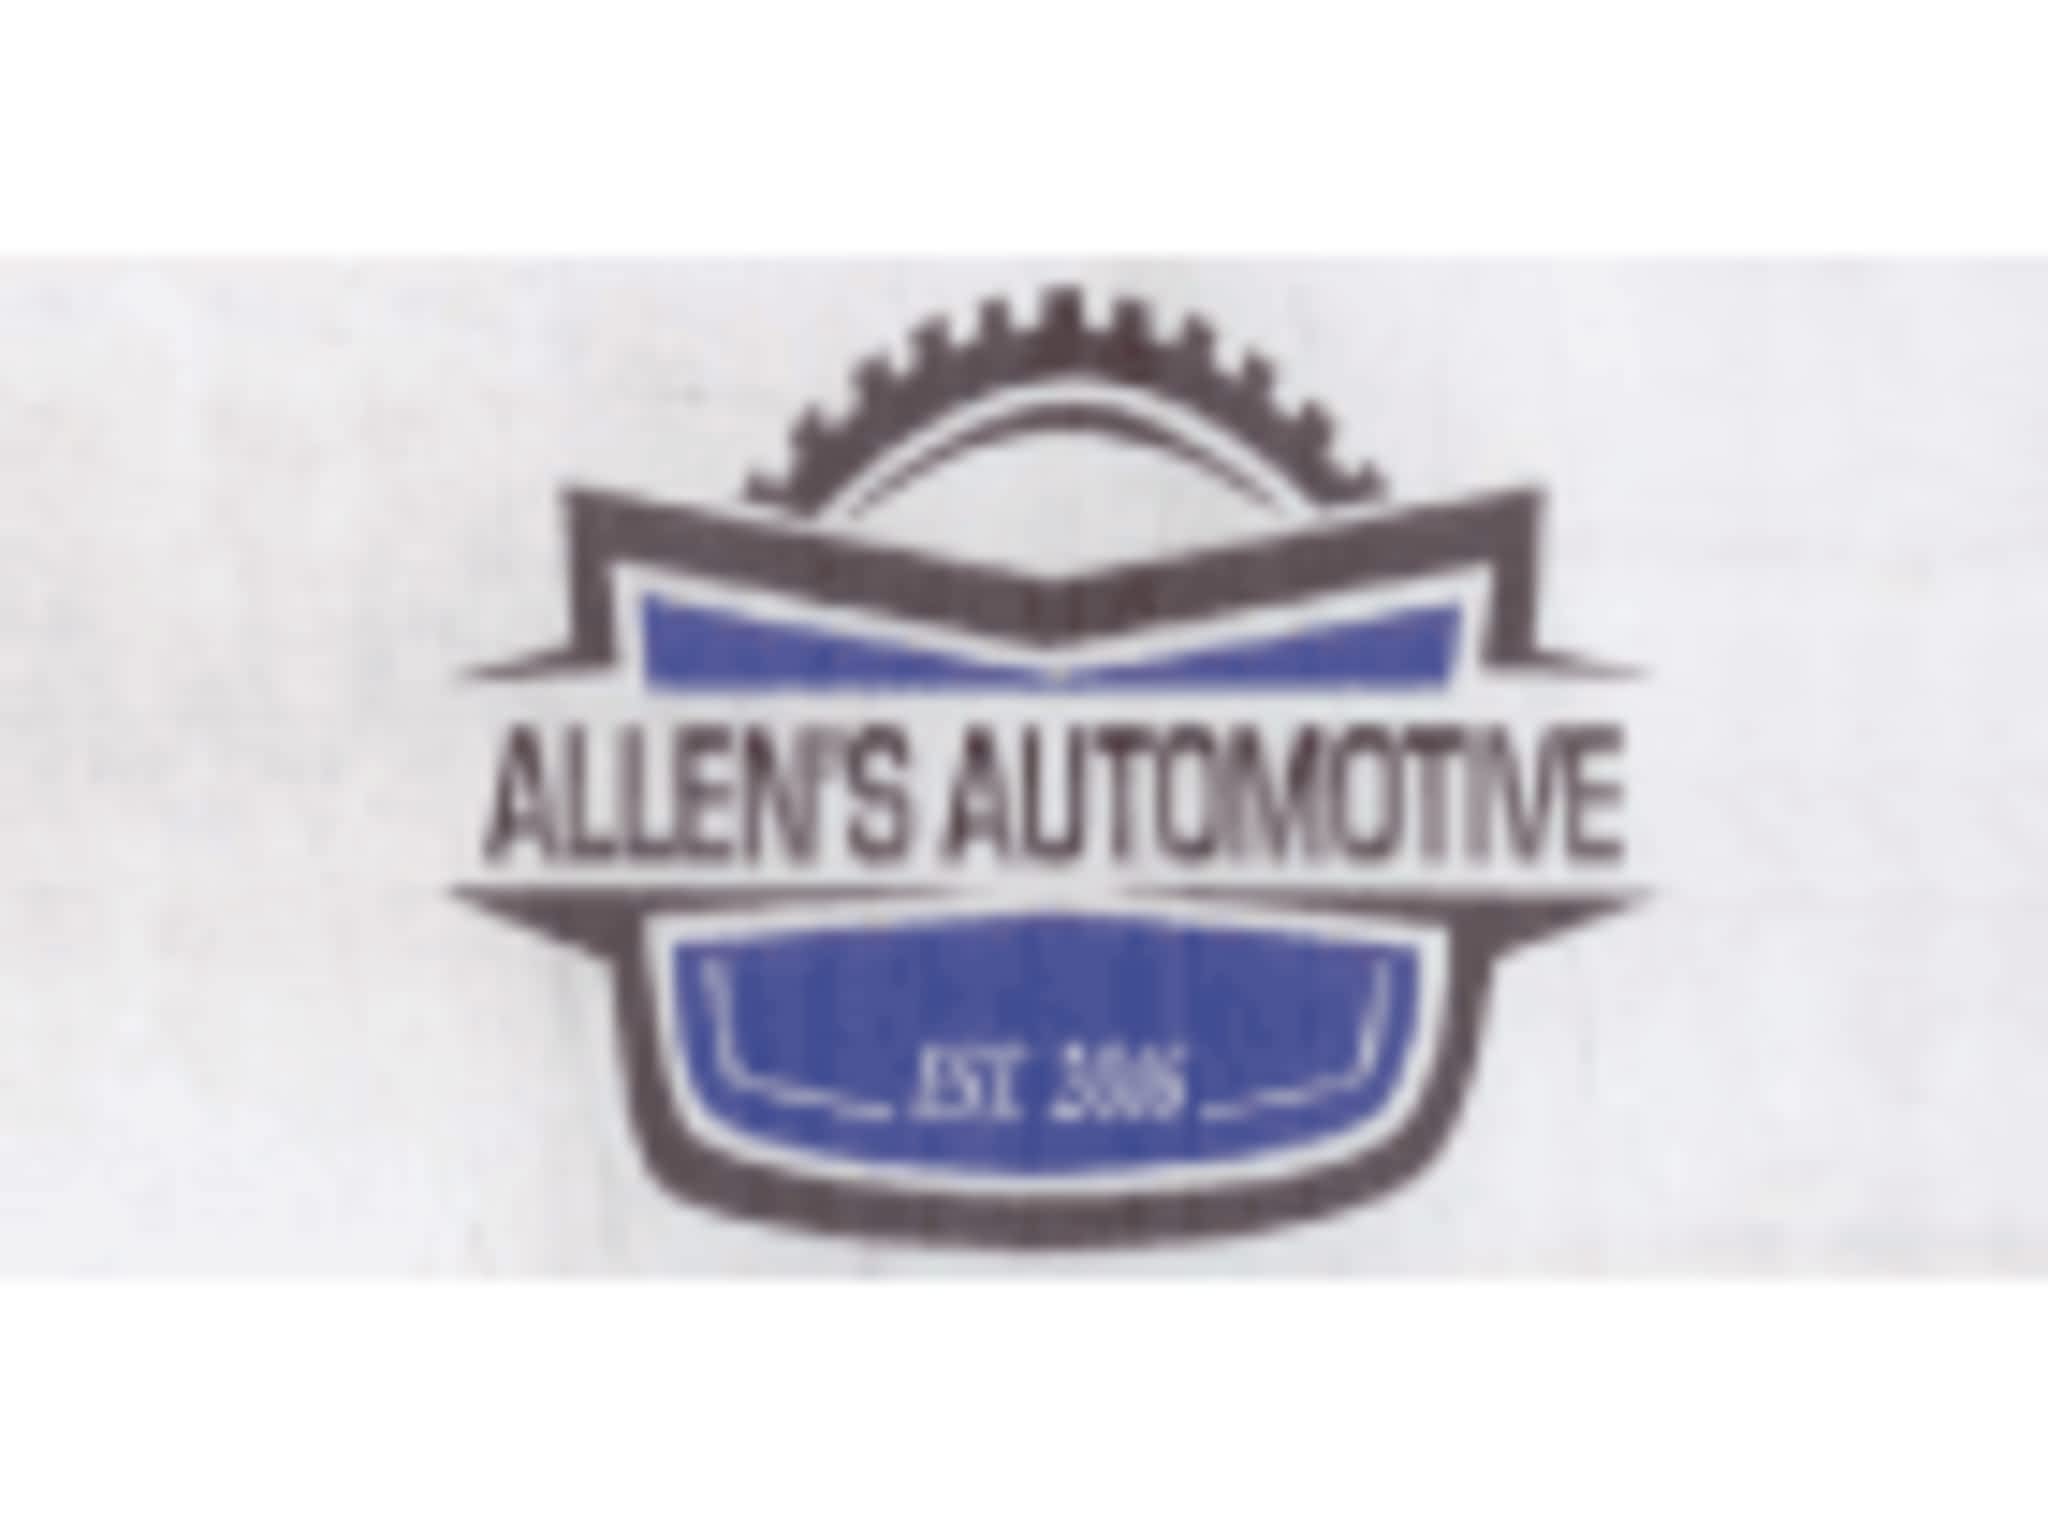 photo Allen's Automotive